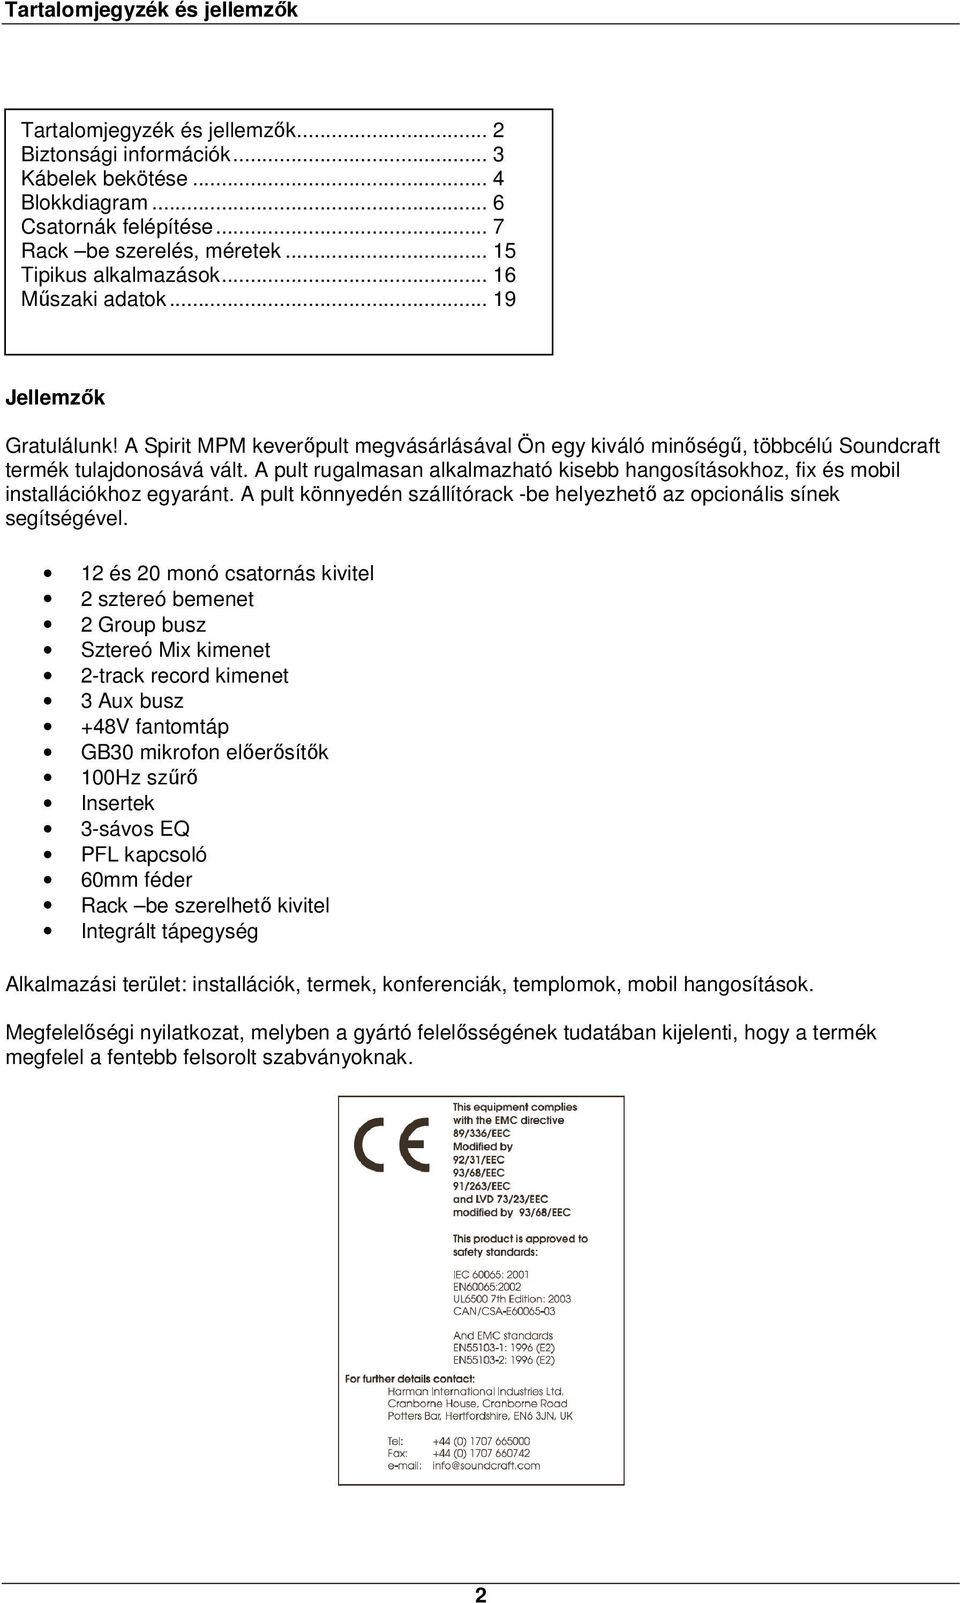 Tartalomjegyzék és jellemzők - PDF Ingyenes letöltés